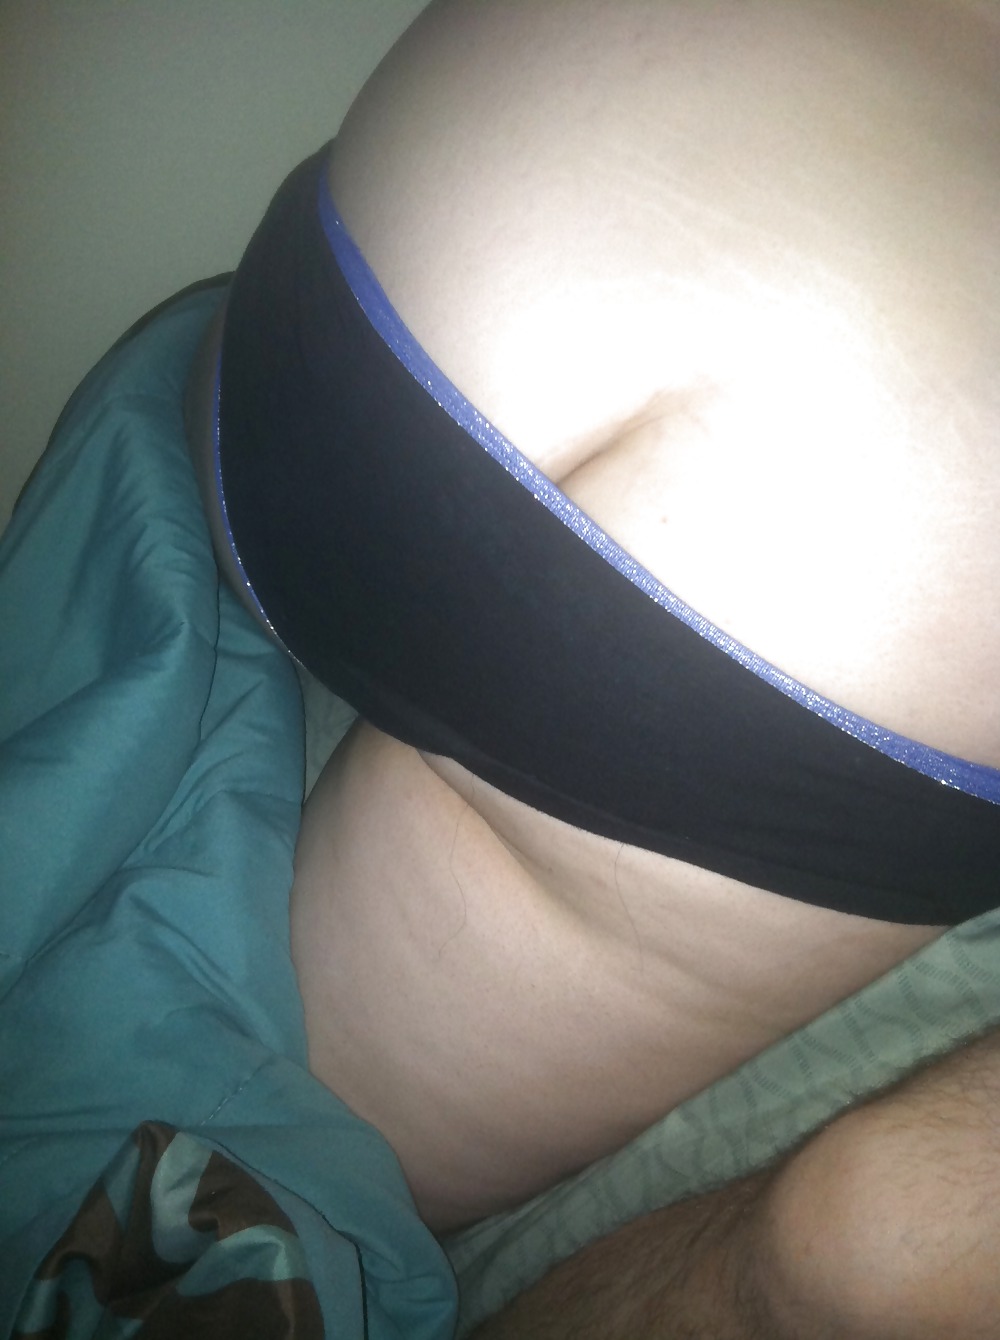 Meine Bbw Frau Sexy Hintern In Unterwäsche, Titten, Beine Und Bauch #26634449